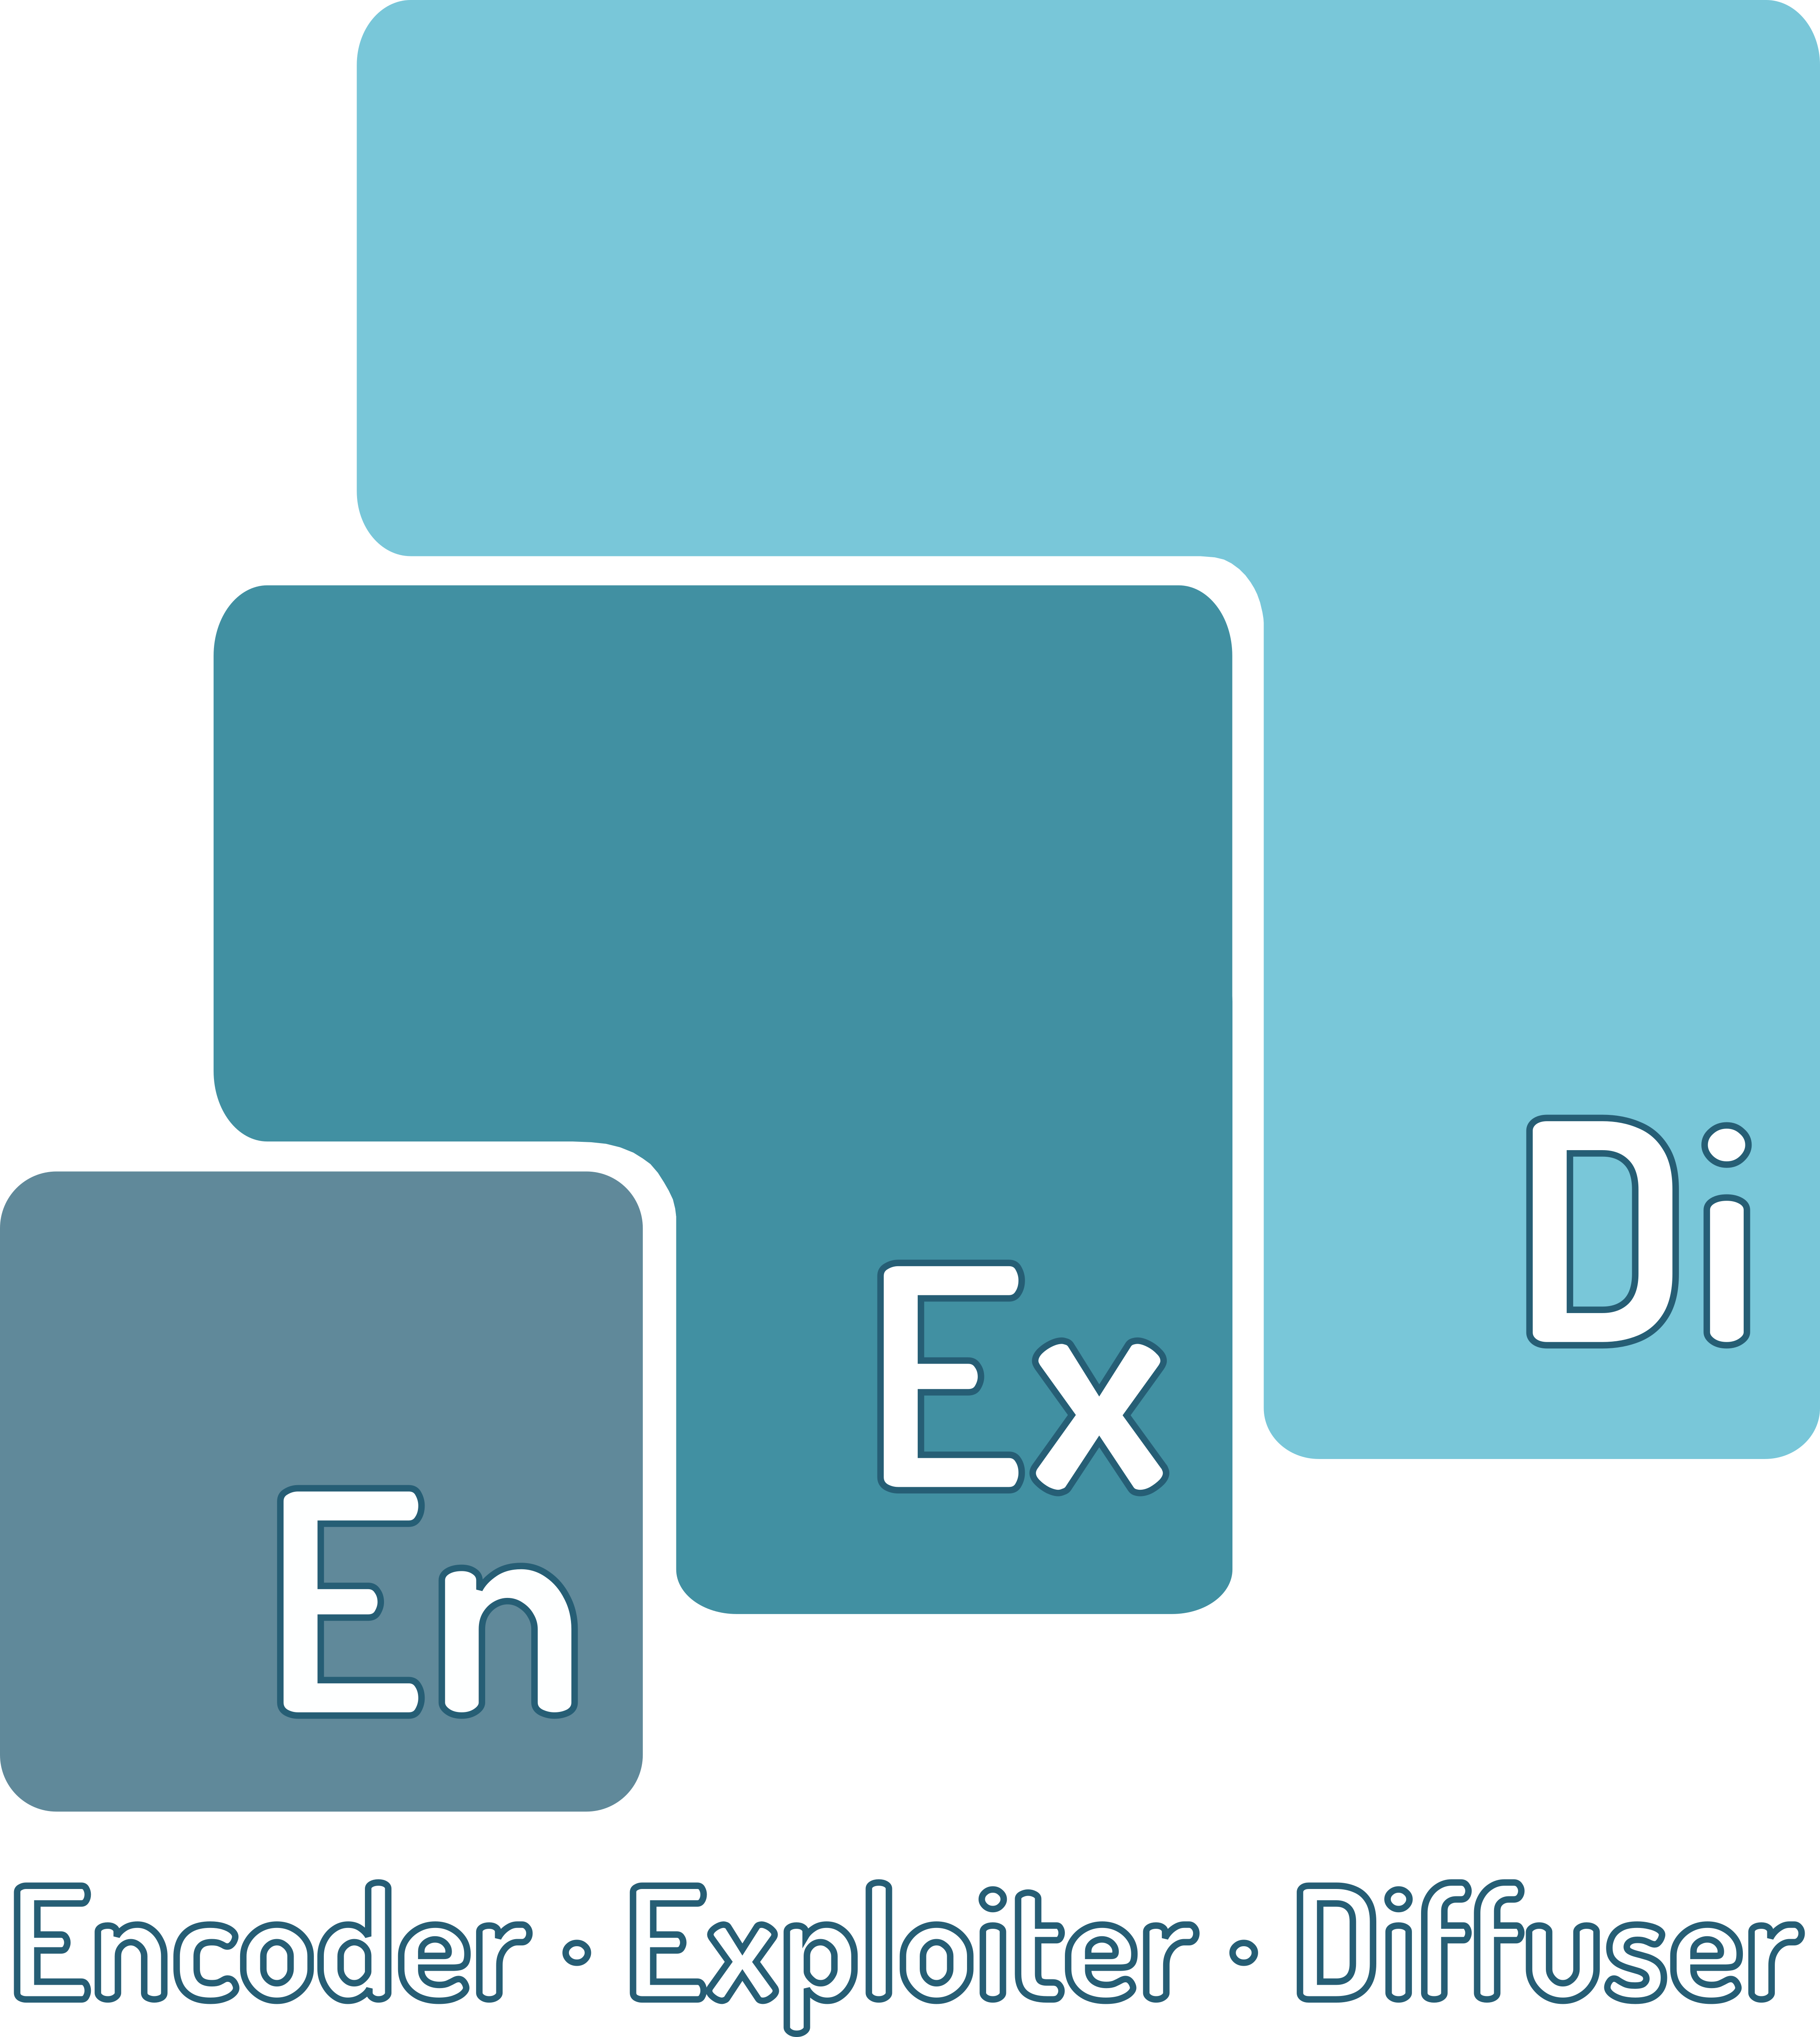 EnExDi logo